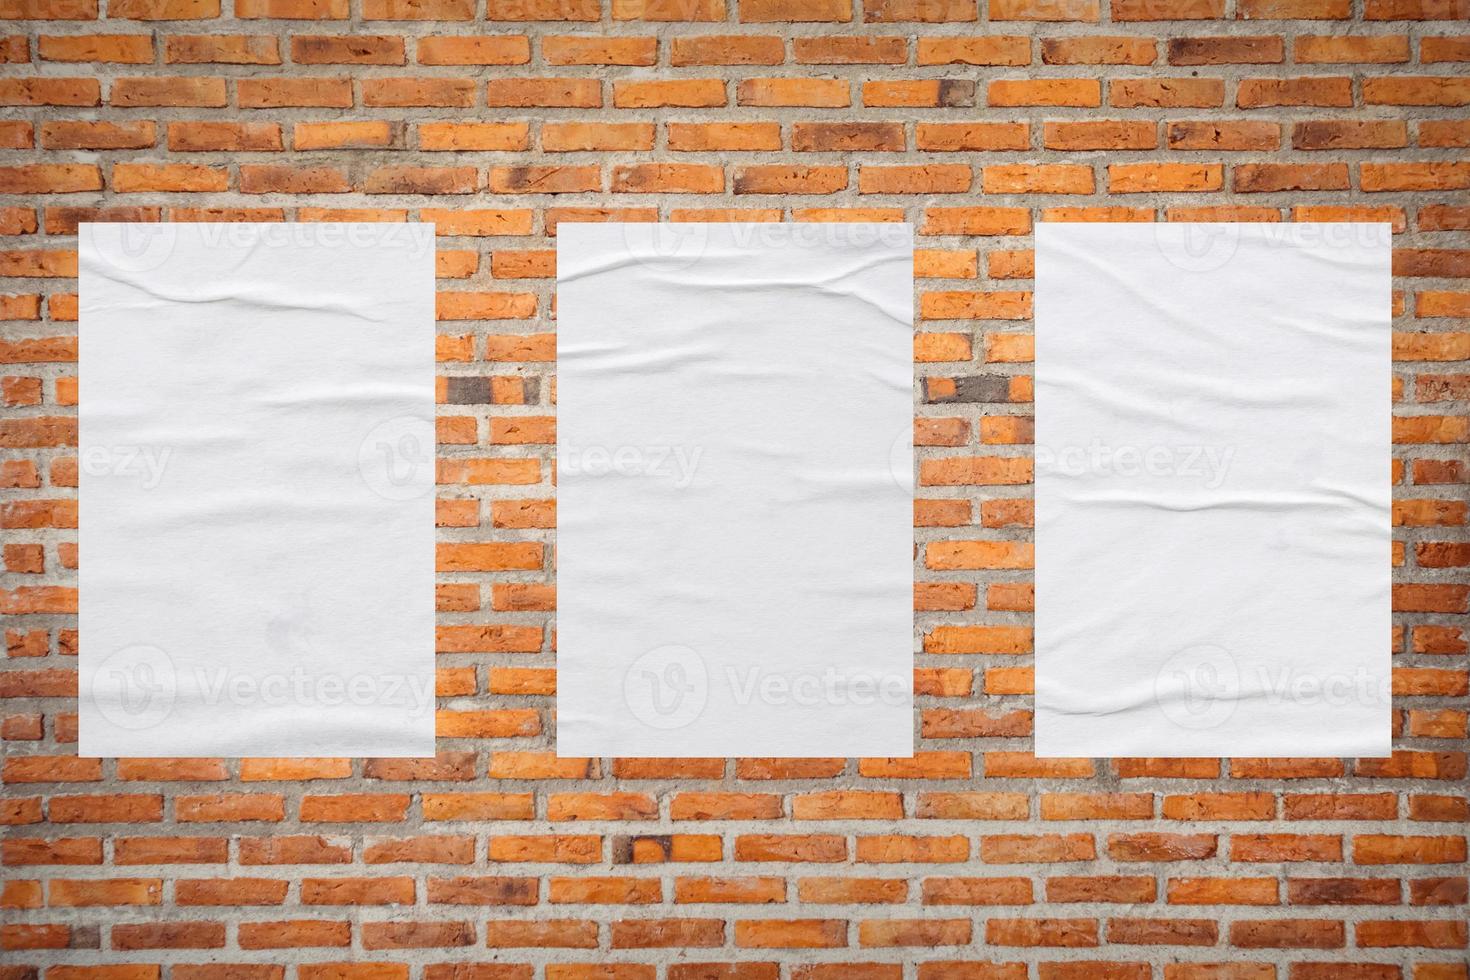 maquete de cartaz de papel colado de pasta de trigo branca em branco no fundo da parede de tijolo foto